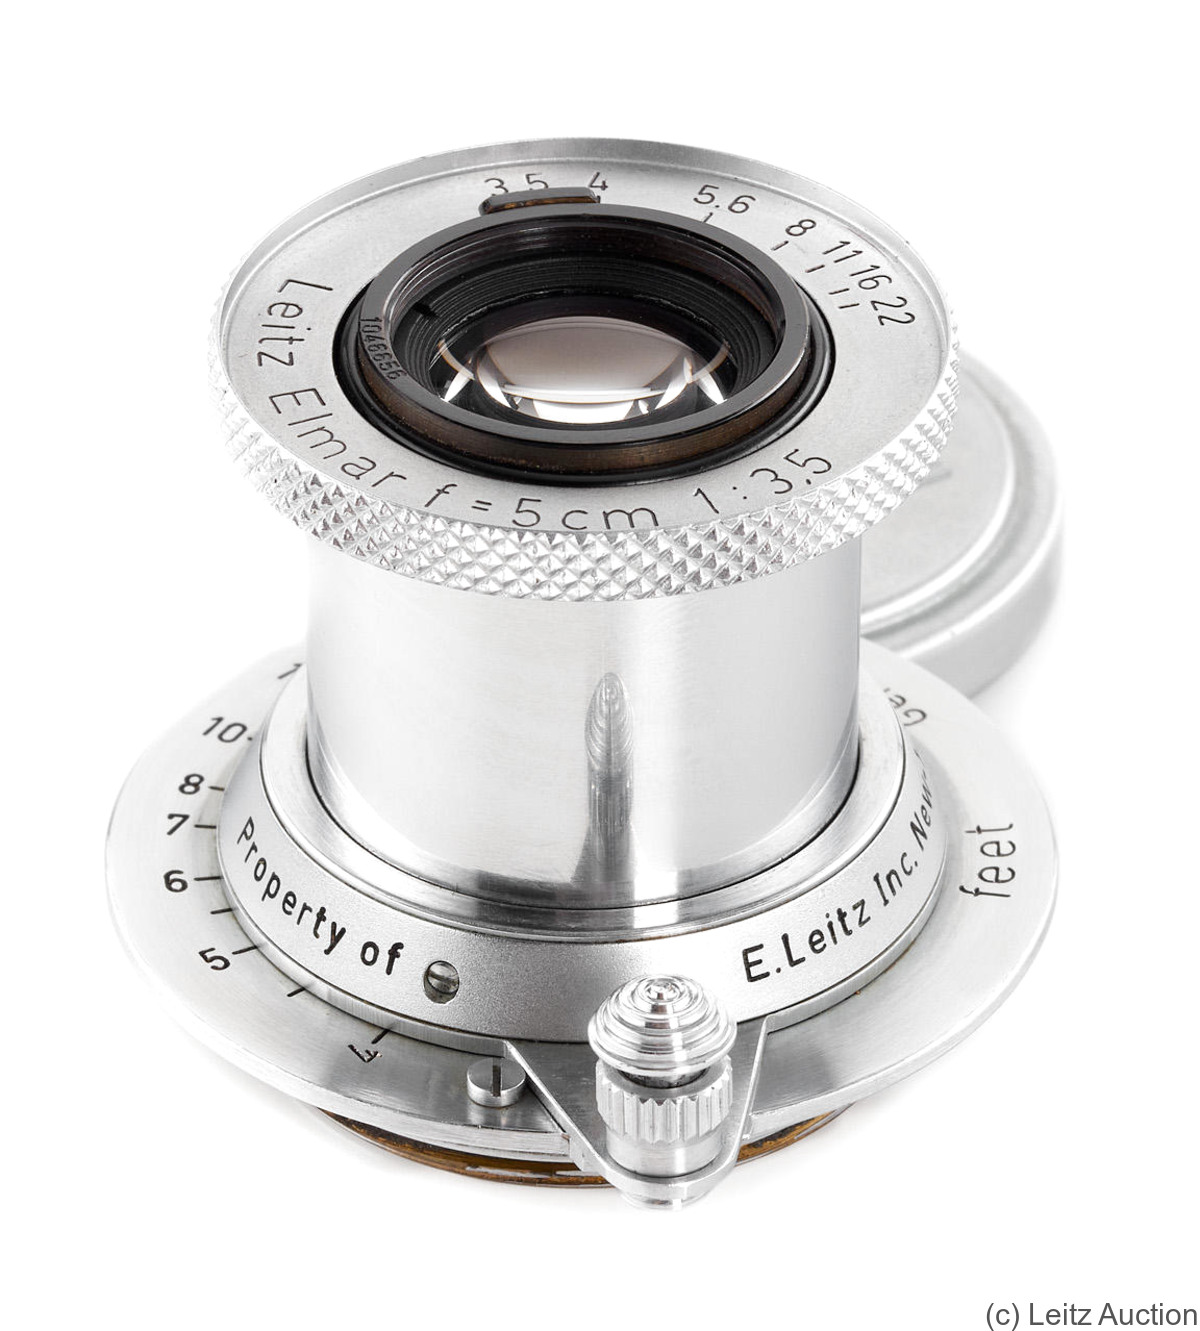 Leitz: 50mm (5cm) f3.5 Elmar 'E.Leitz' (SM, chrome) camera